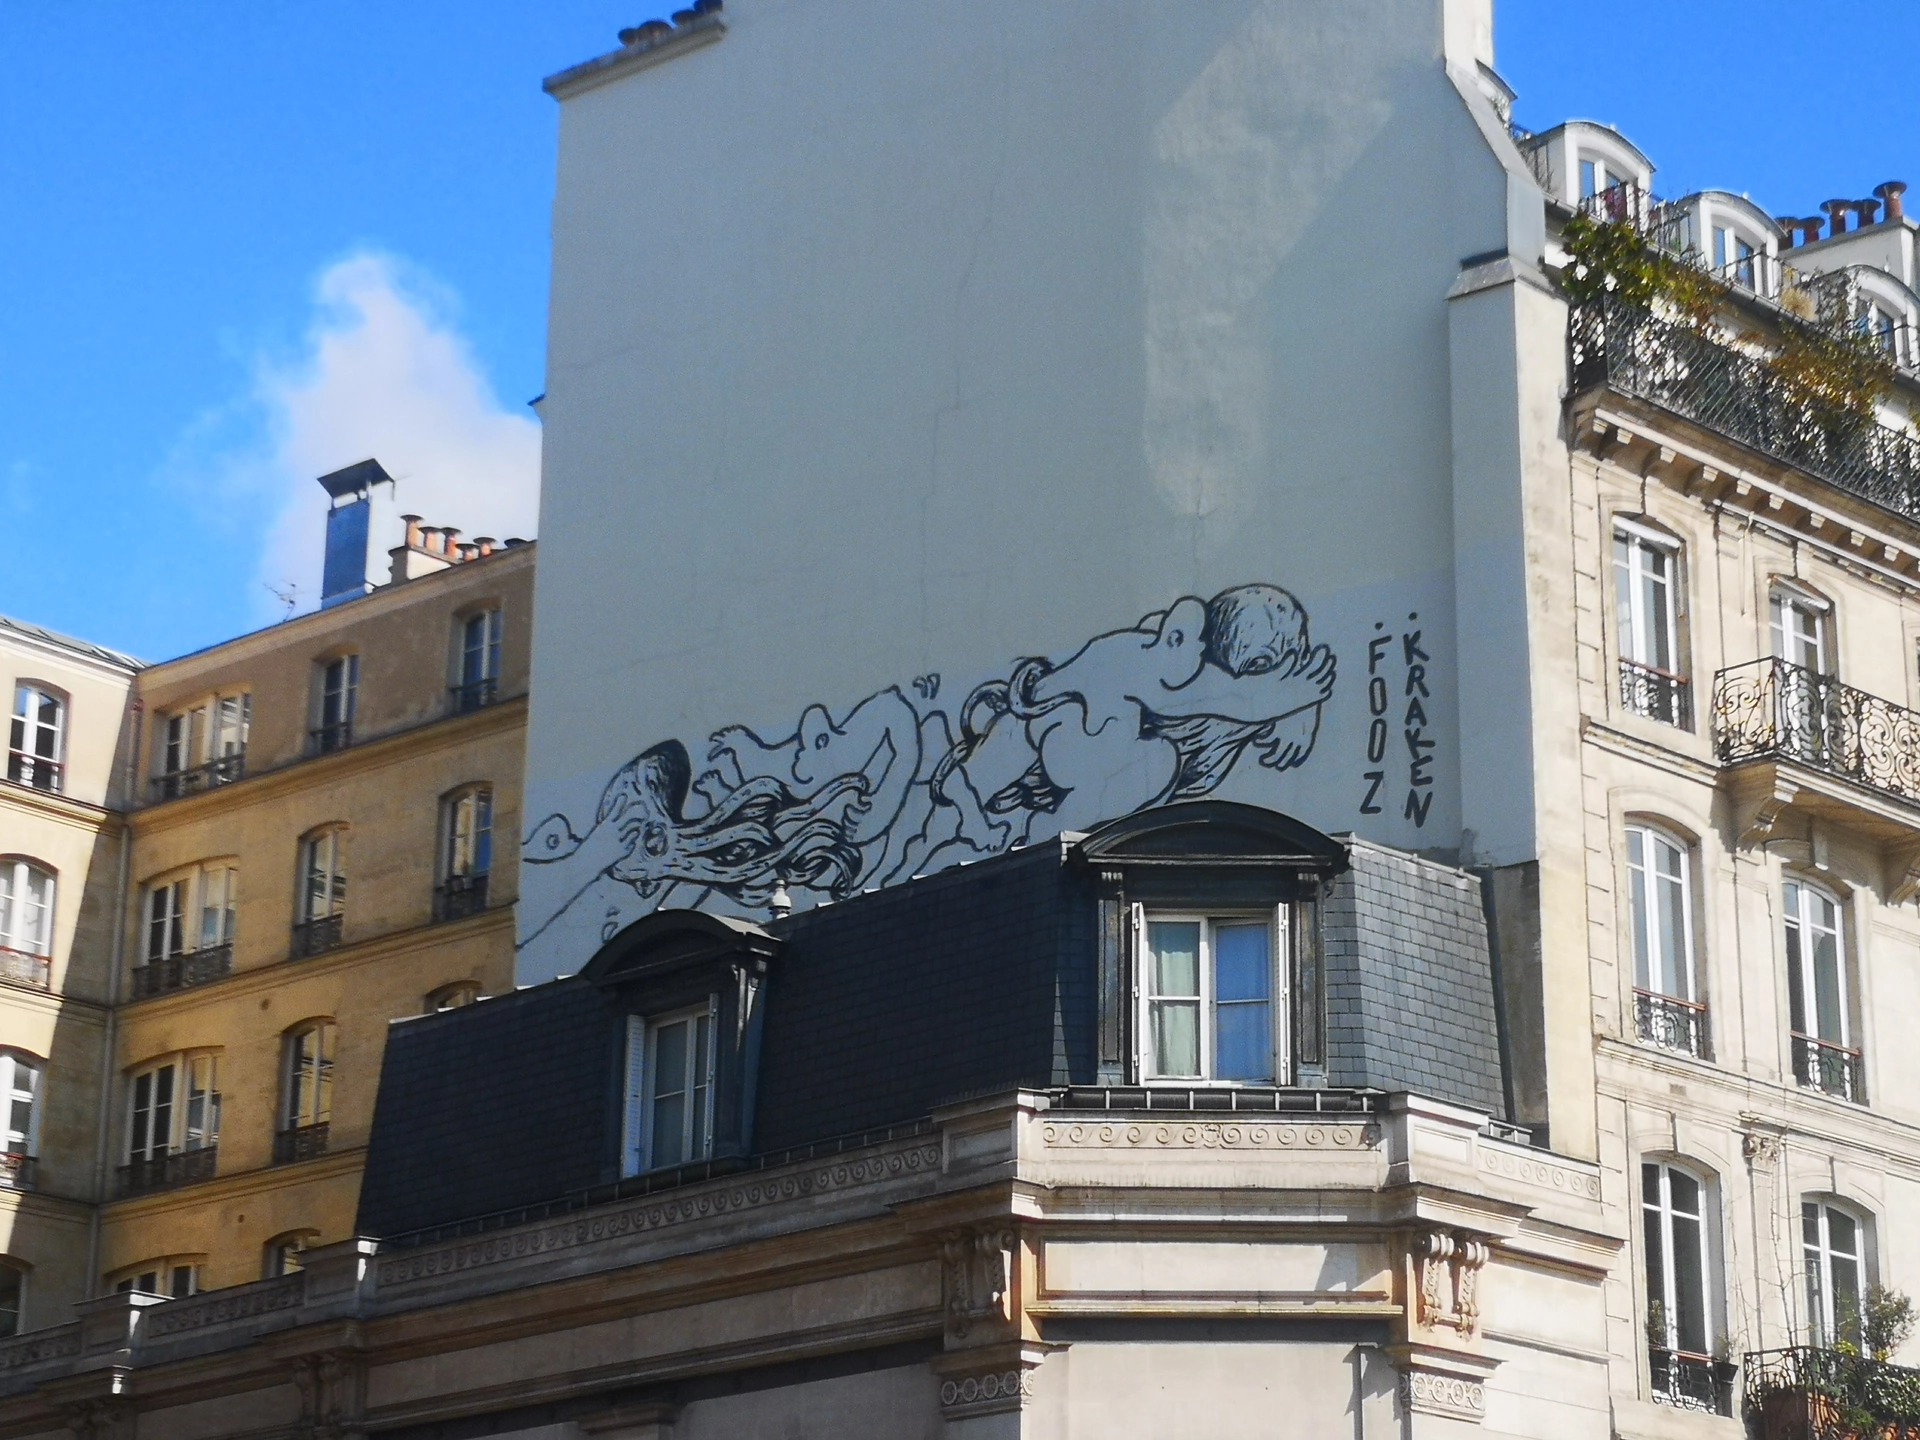 Oeuvre de Street Art réalisée par Kraken à Paris